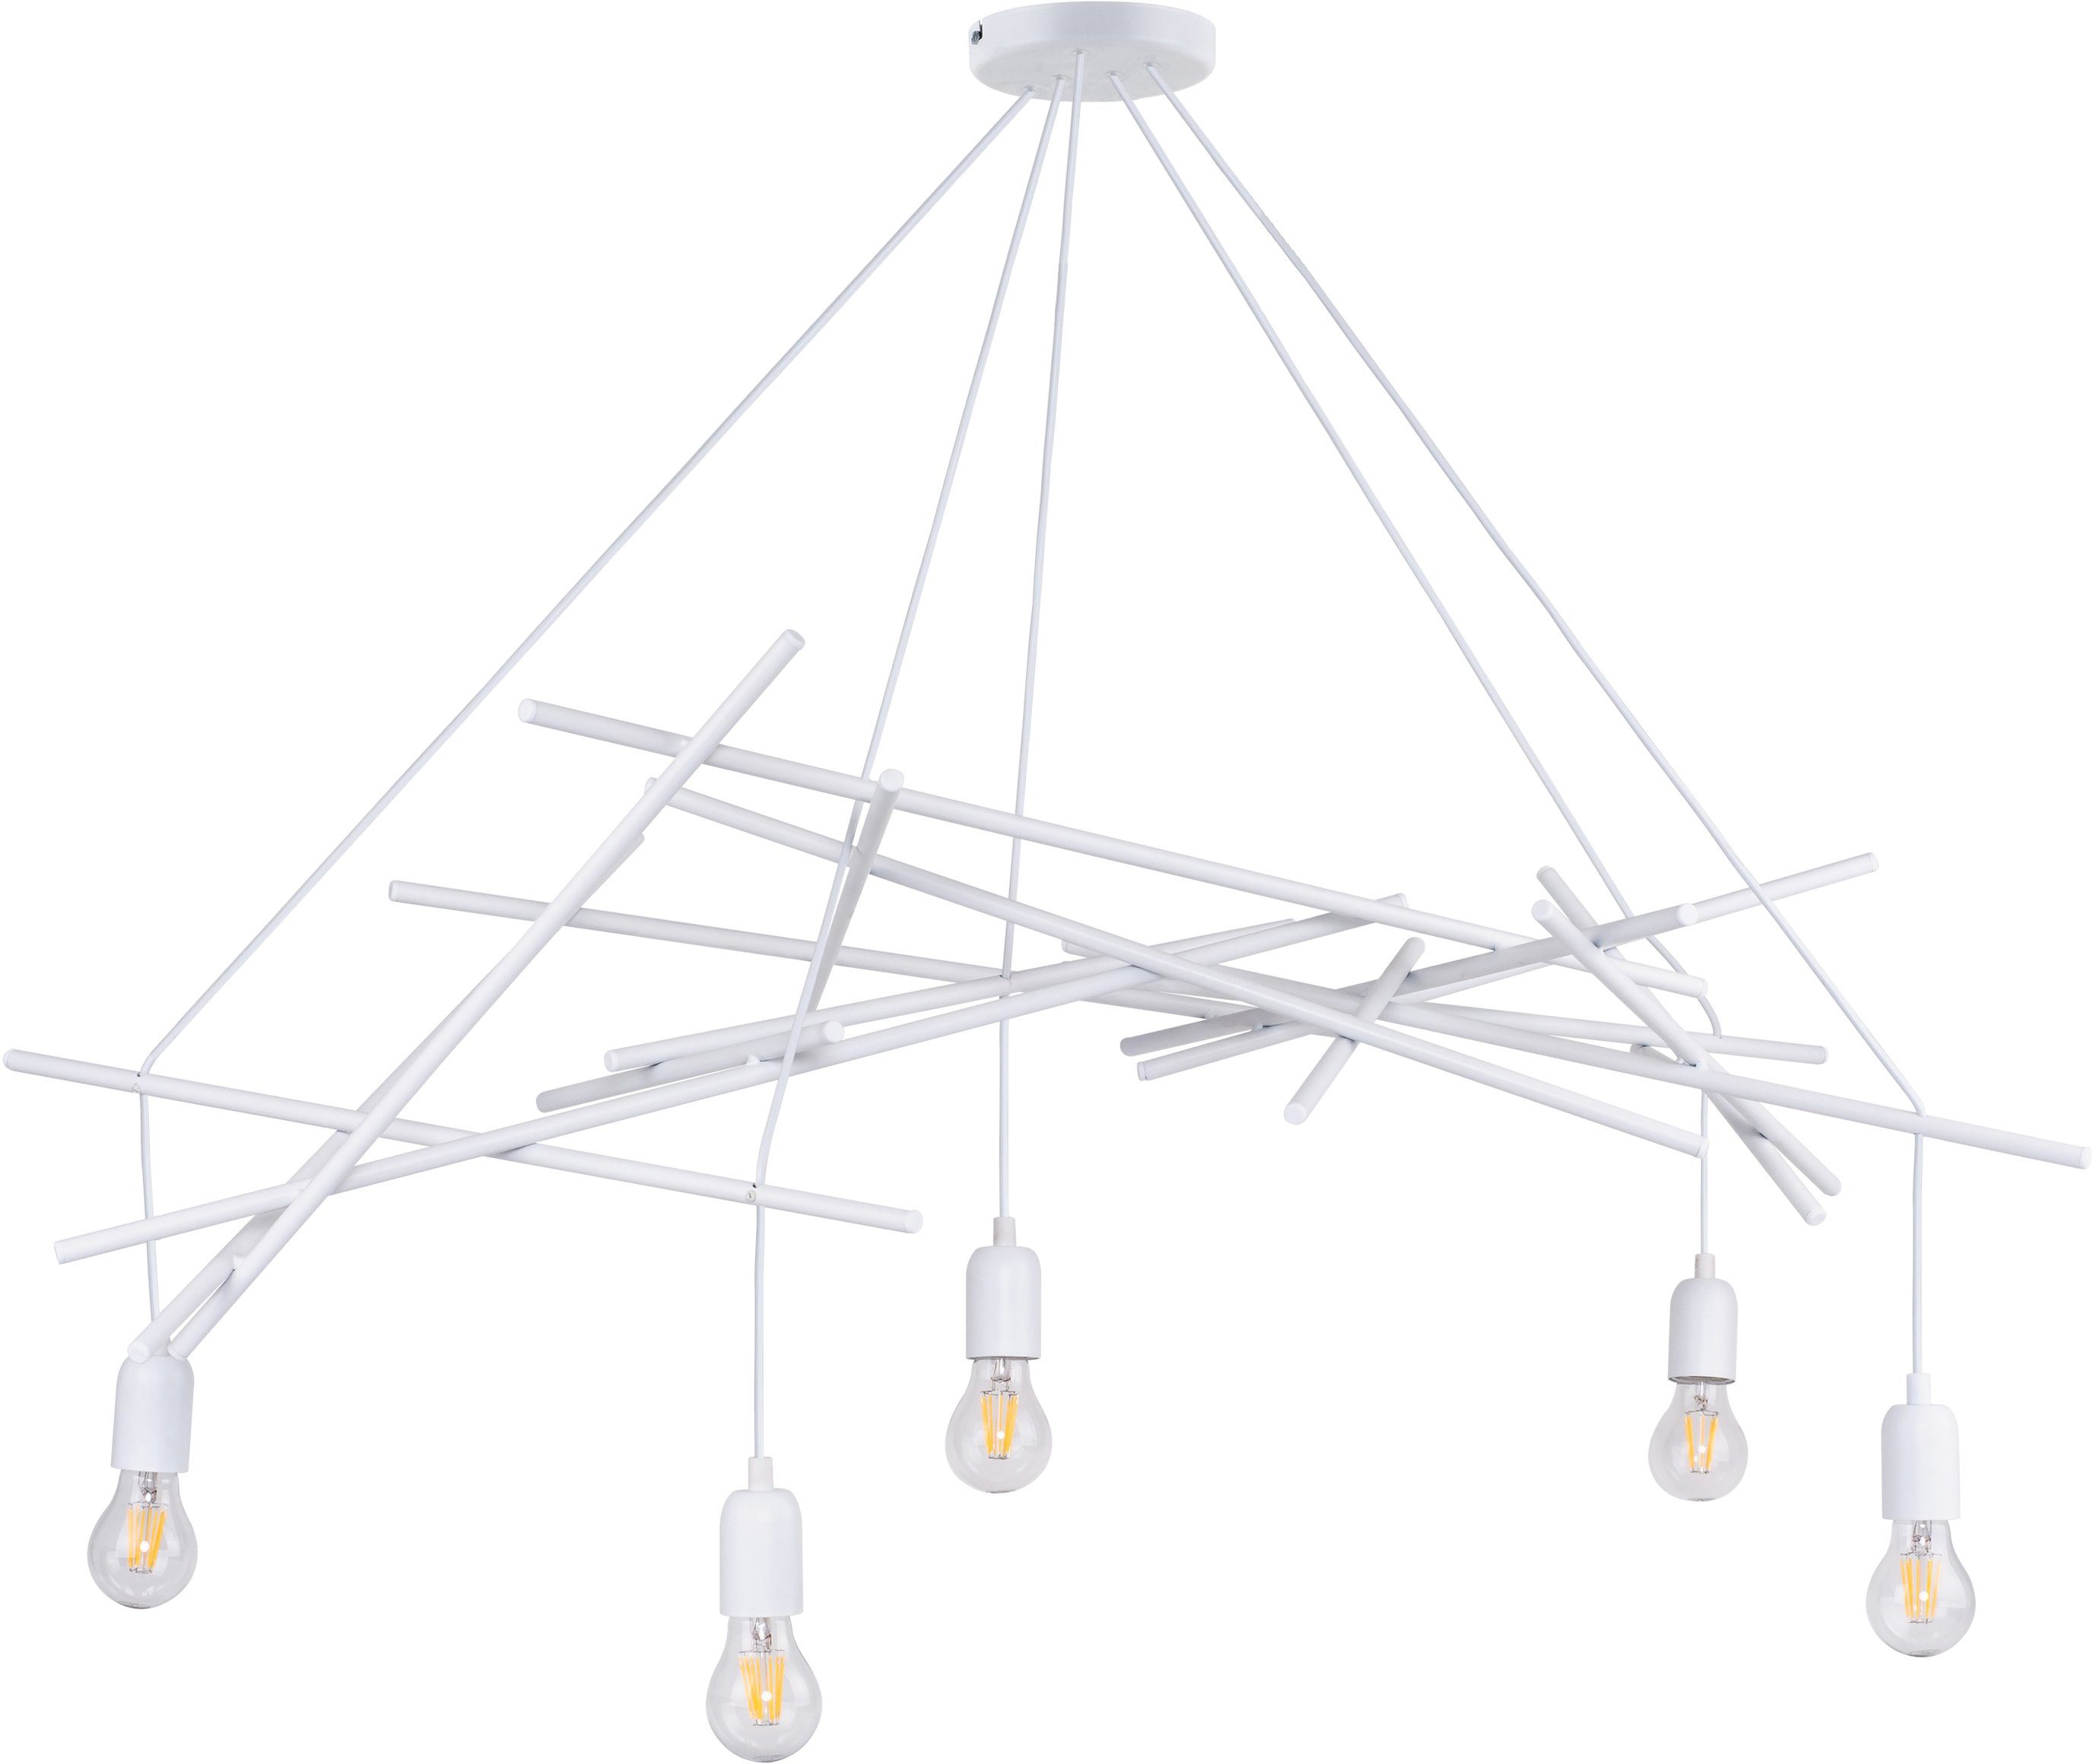 SPOT Light Hanglamp GLENN van metaal, origineel design, bijpassende lm e27, made in eu (1 stuk)